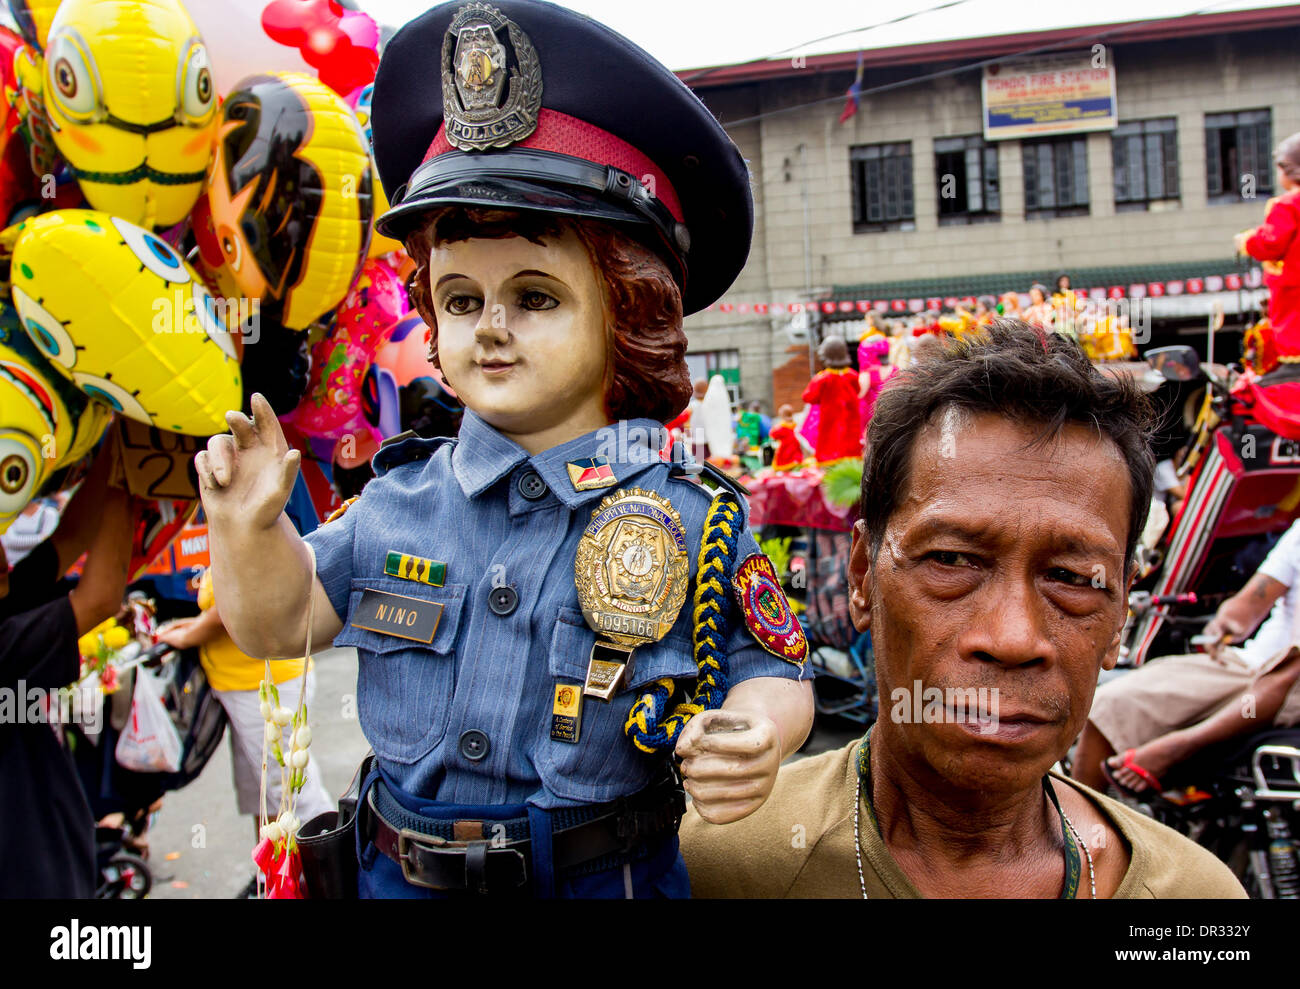 Manila, Filipinas -- El 18 de enero de 2014: Un de llevar la imagen del Niño Jesús, vistiendo el uniforme de la Policía Nacional filipina durante el festival, "Lakbayaw Lakbayaw" festival